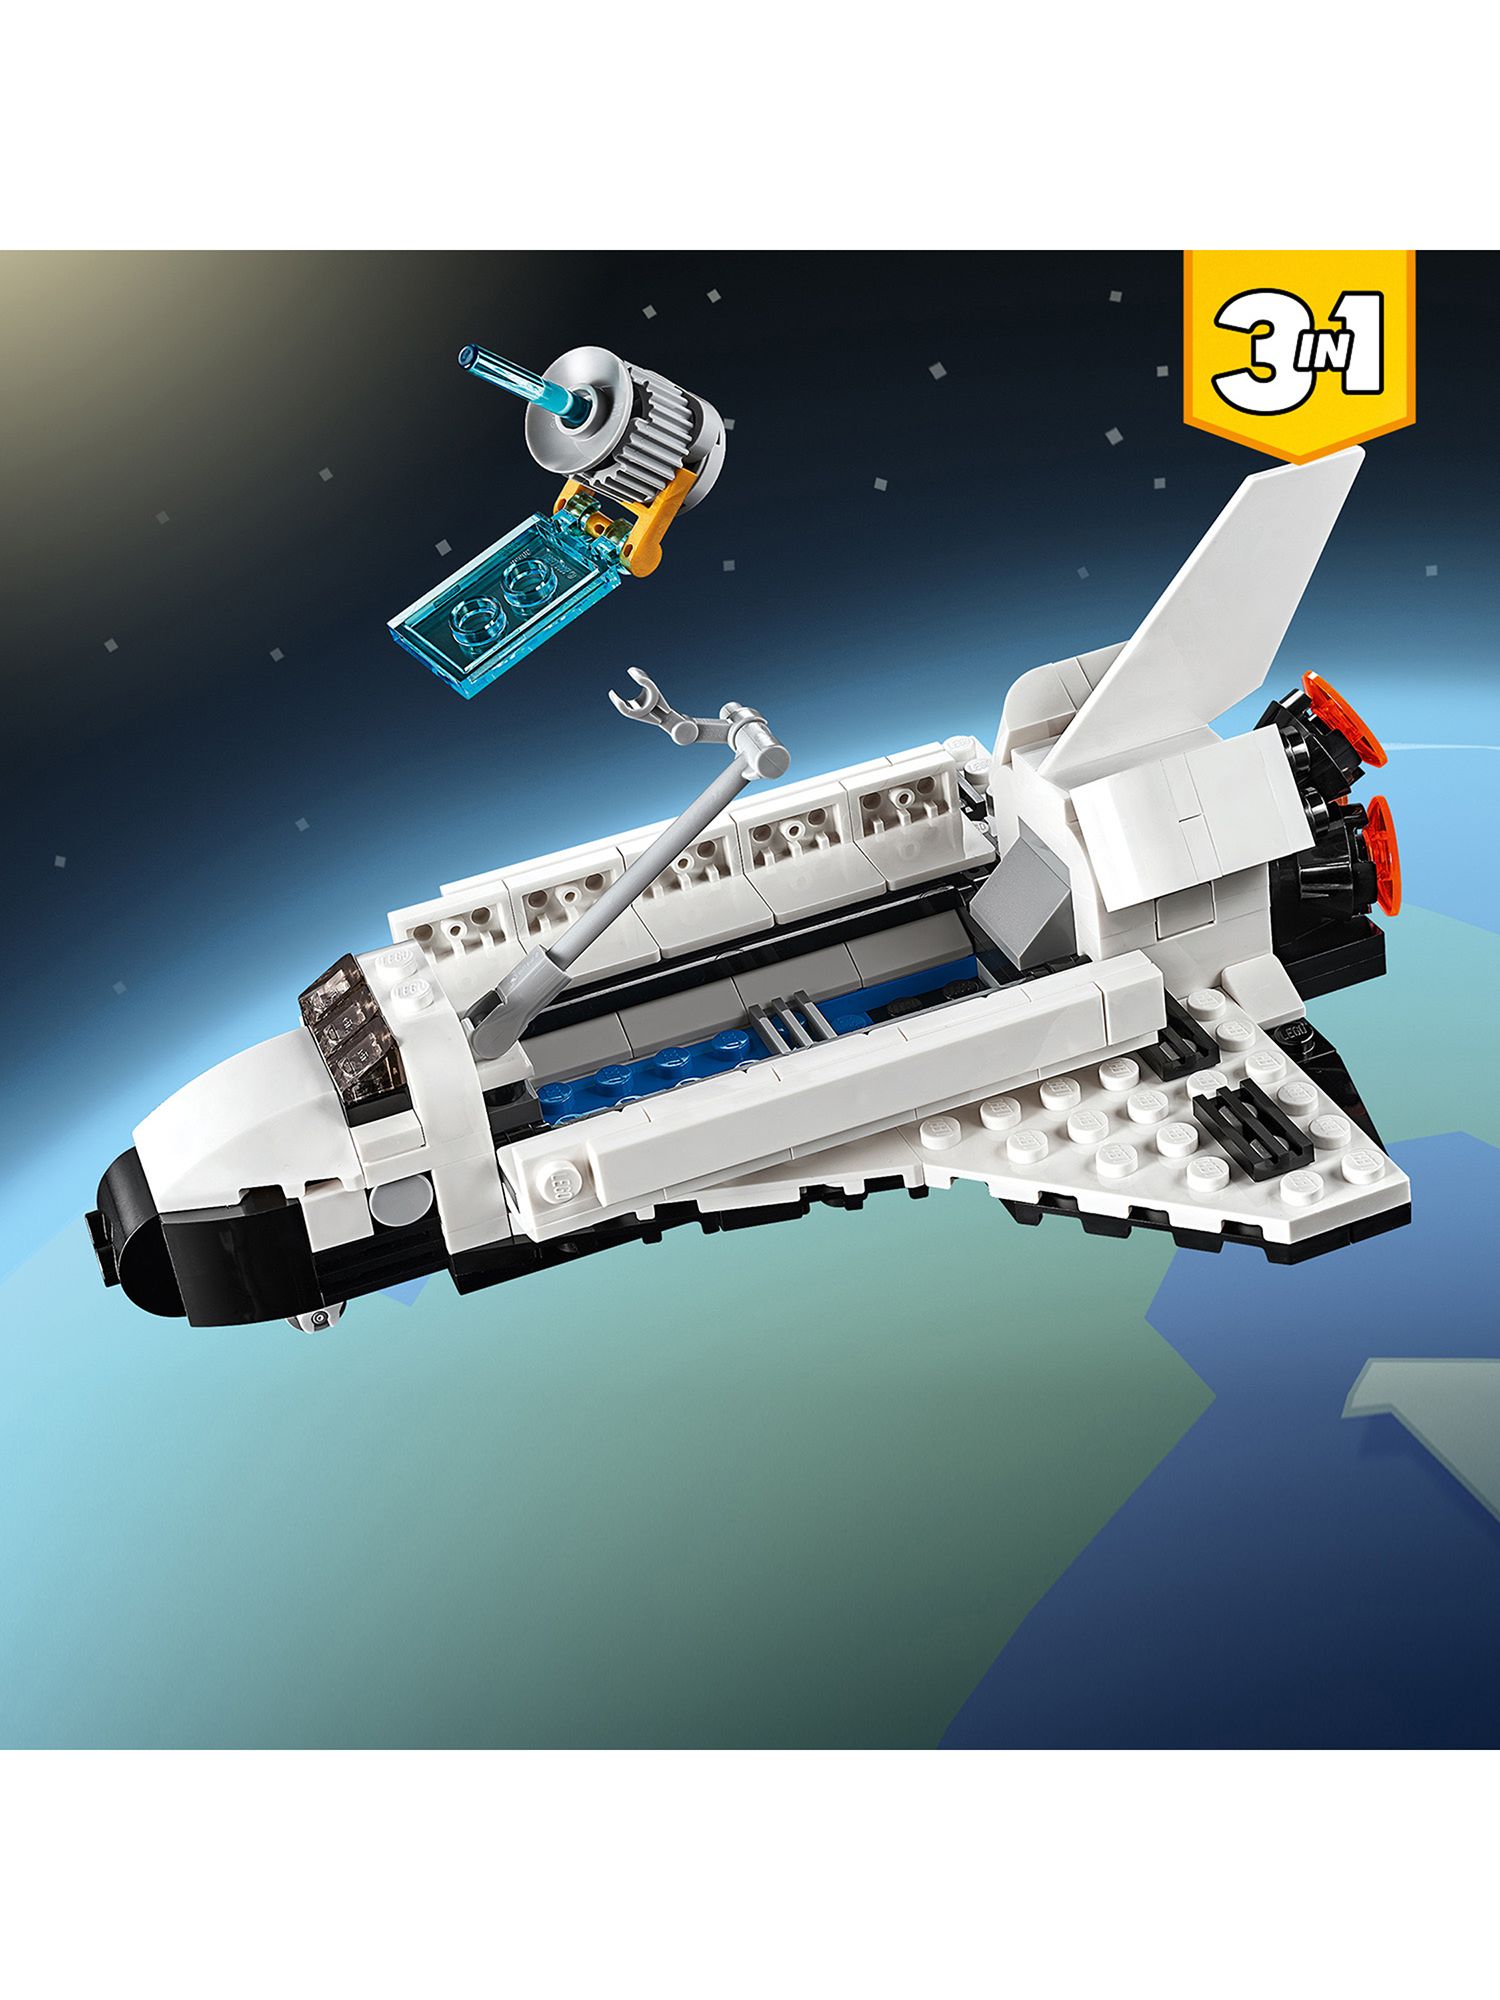 lego 3 in 1 space shuttle